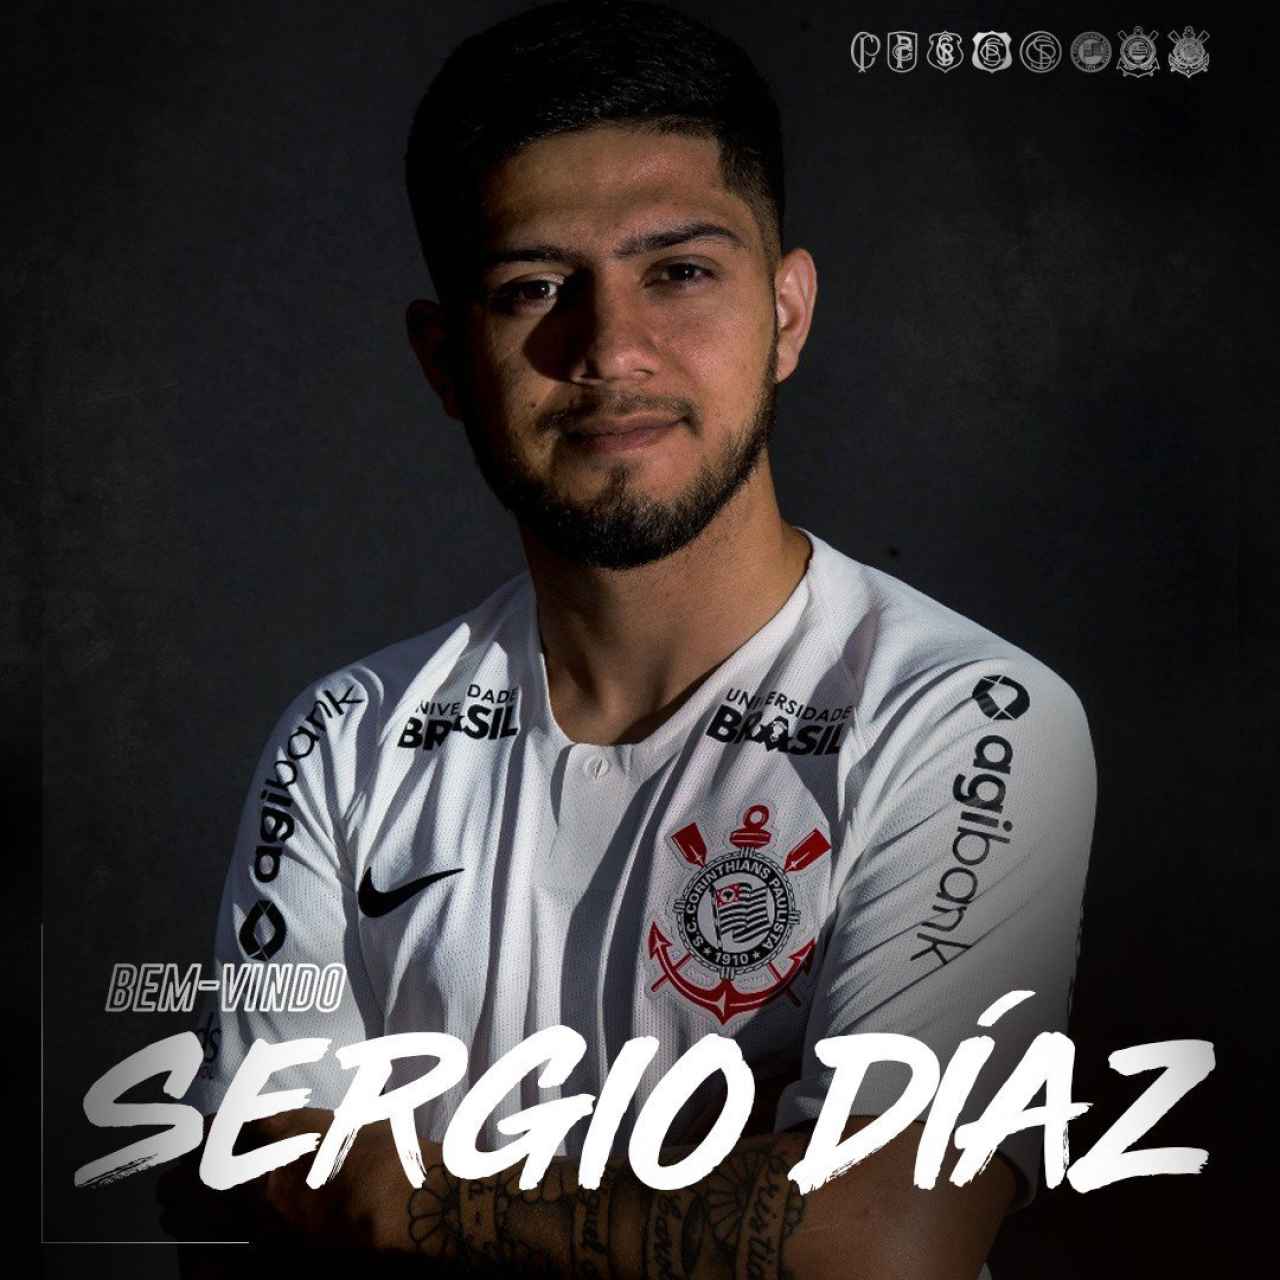 Sergio Diaz, nuevo jugador del Corinthians. Foto: Twitter (@Corinthians)